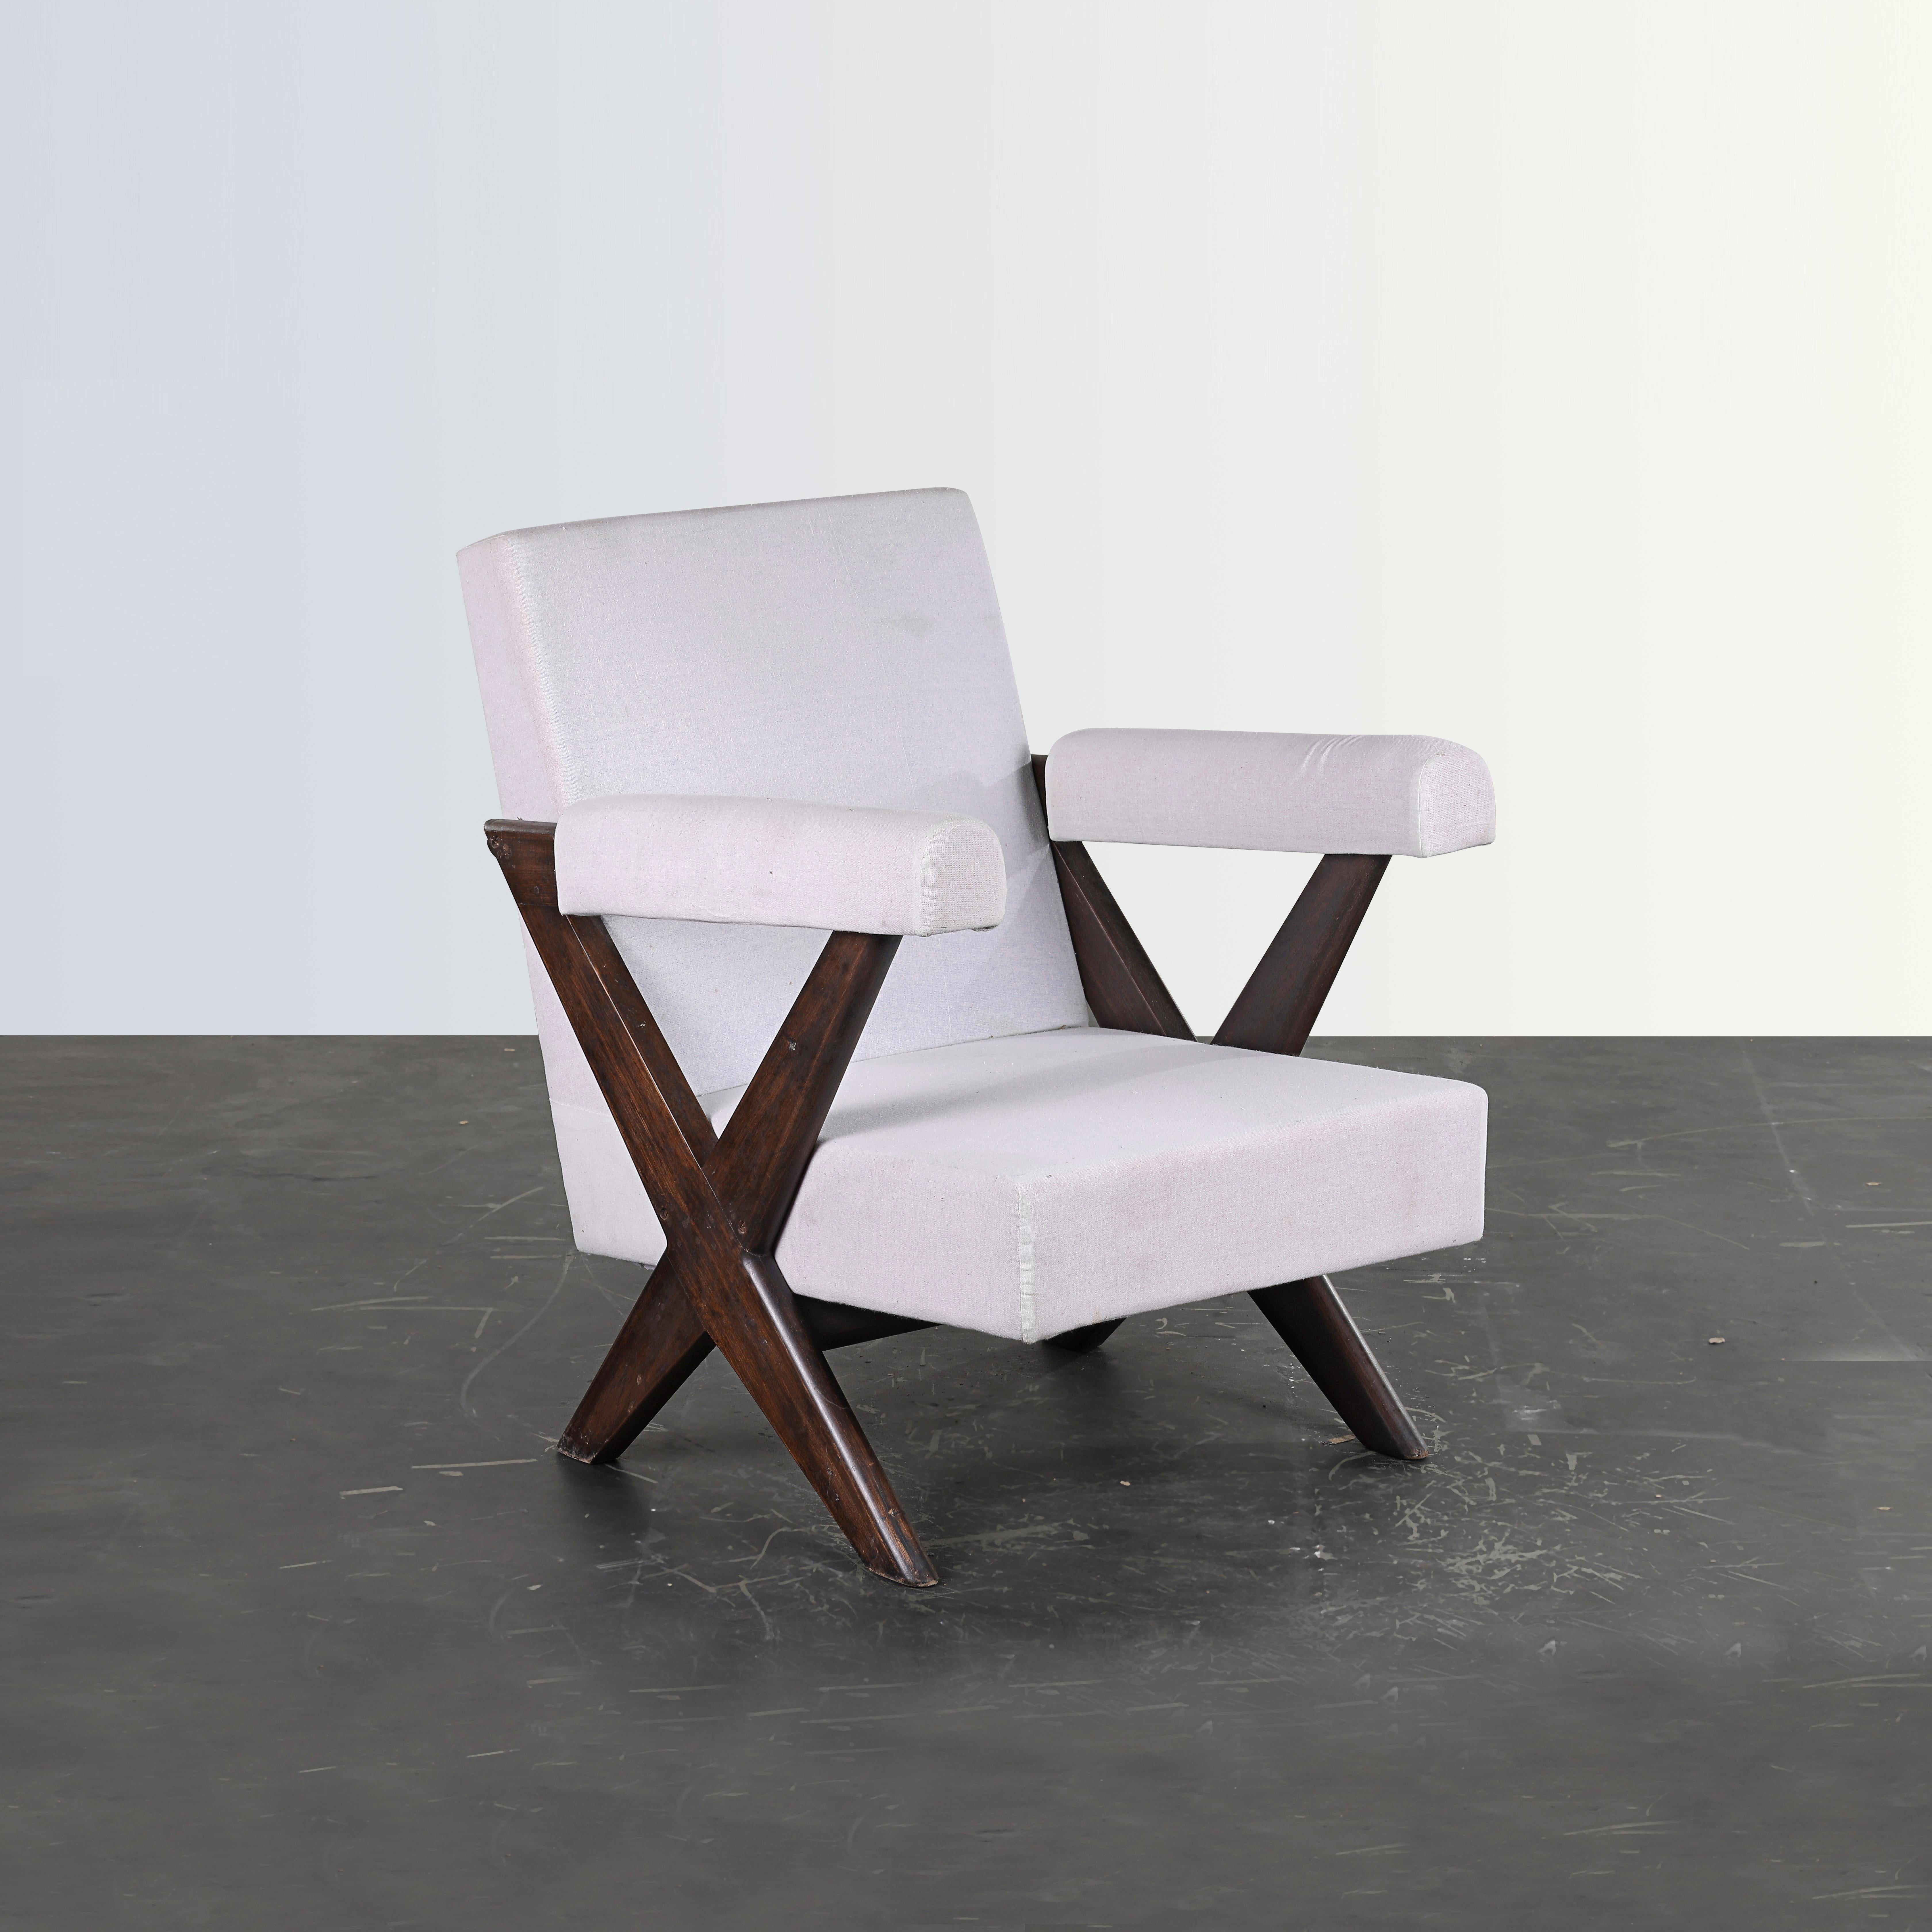 Ces chaises ne sont pas seulement une pièce fantastique, c'est une icône du design. Enfin, ce sont les objets les plus célèbres de tous les objets de Chandigarh. Elles sont brutes dans leur simplicité, incarnant une nonchalance expressive. Ce design